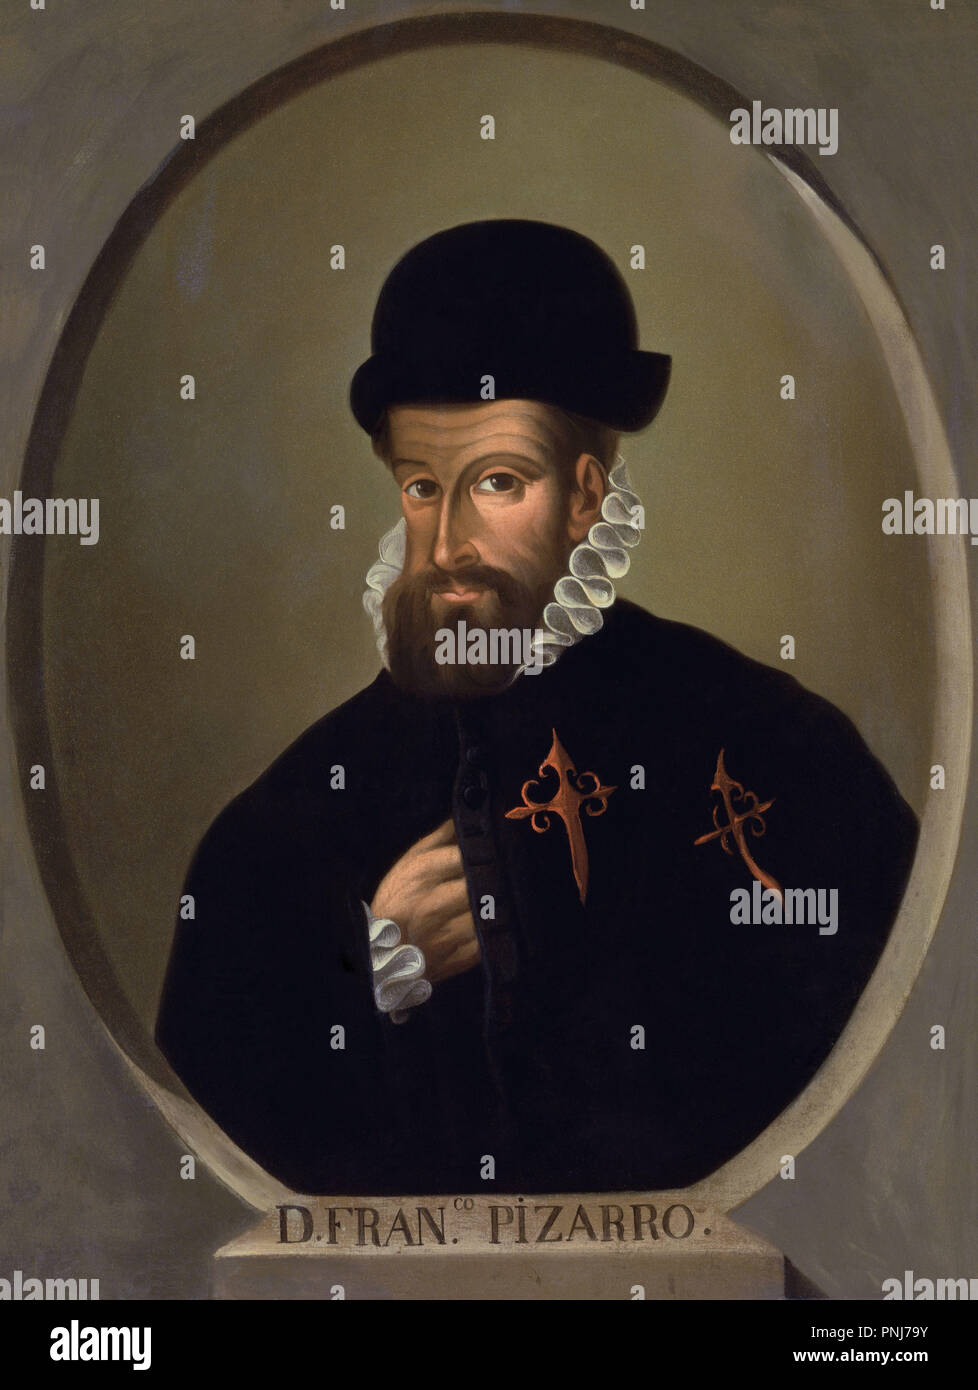 Portrait de Francisco Pizarro (1476-1541), conquistador espagnol du Pérou.. Séville, Archivo General de Indias. Auteur : anonyme. Emplacement : Archivo de Indias. Sevilla. Séville. L'ESPAGNE. Banque D'Images